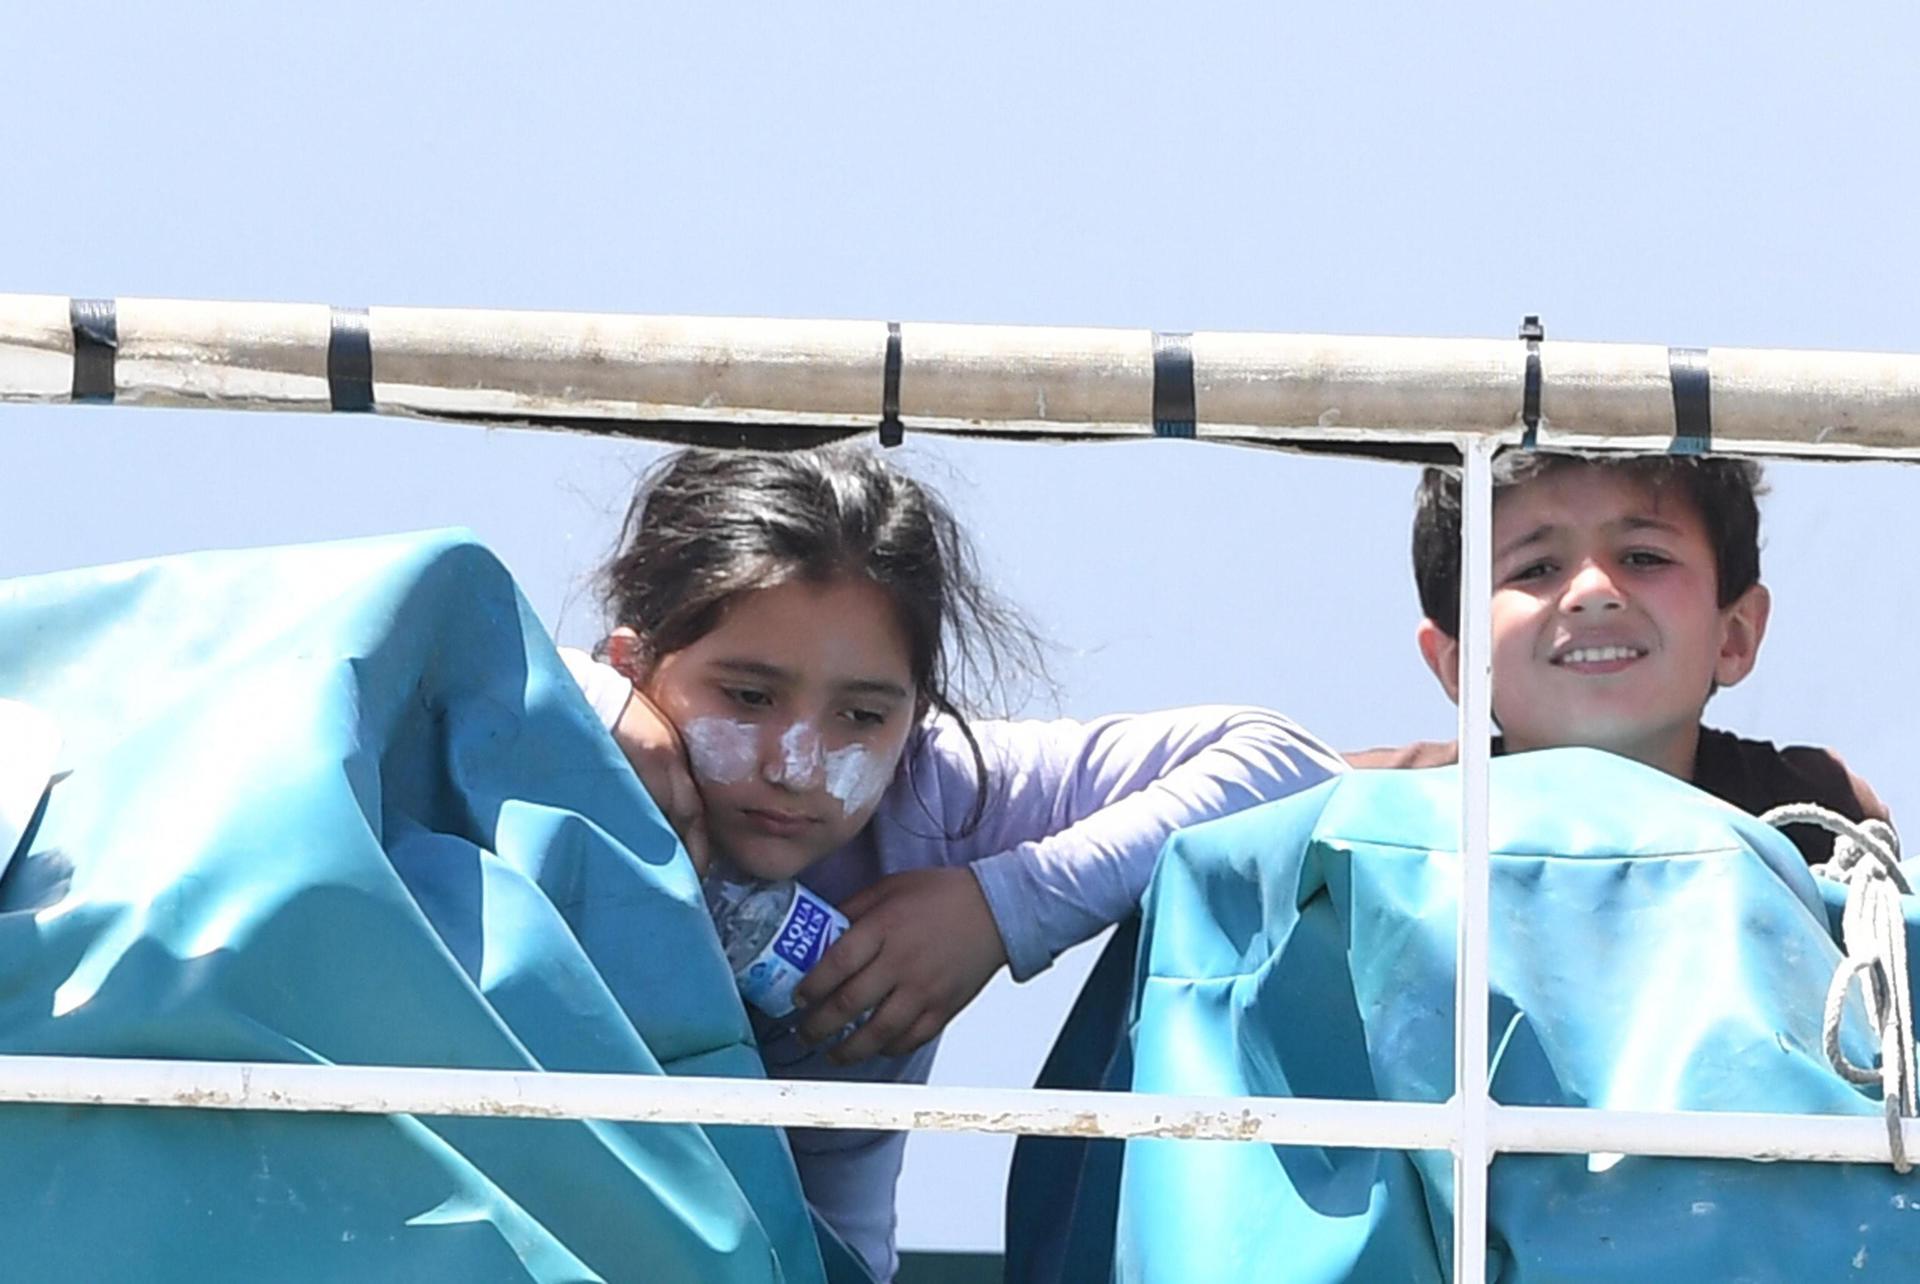 Foto de archivo de dos niños migrantes rescatados mientras trataban de cruzar el Mediterráneo. EFE/Ciro Fusco